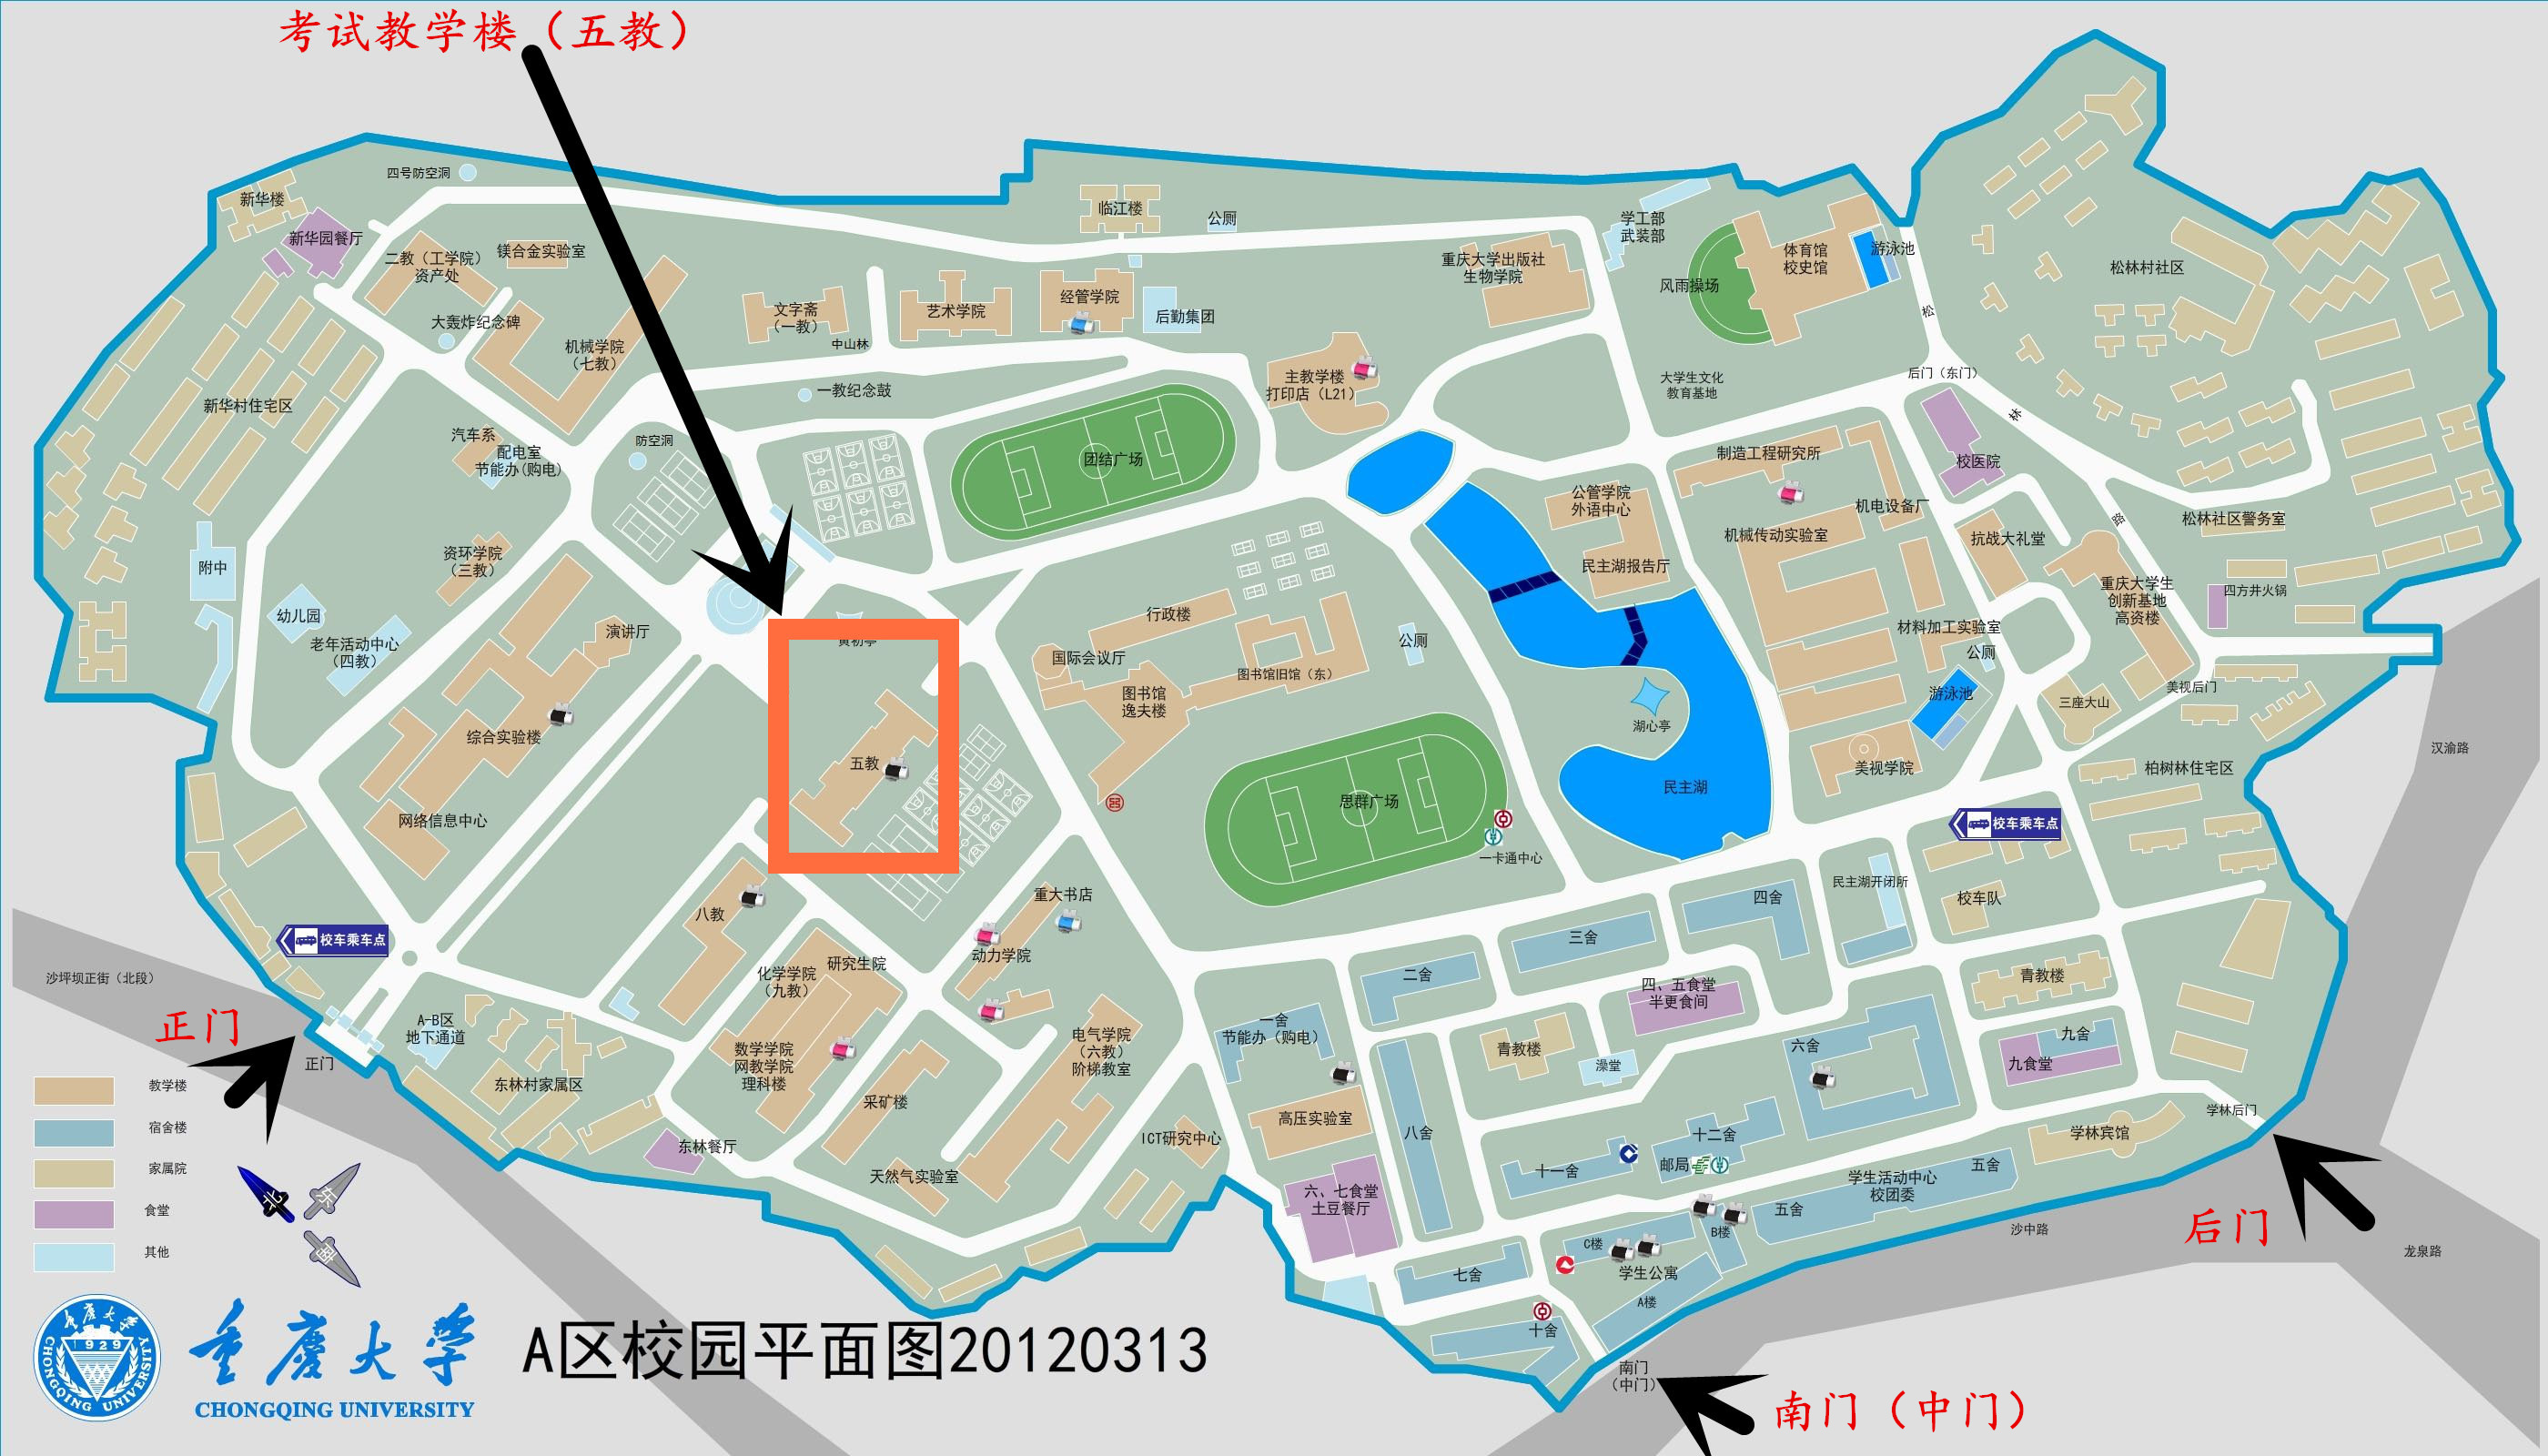 大赛动态 正文  赛点:重庆大学-a区 地址:重庆市沙坪坝区沙正街174号图片